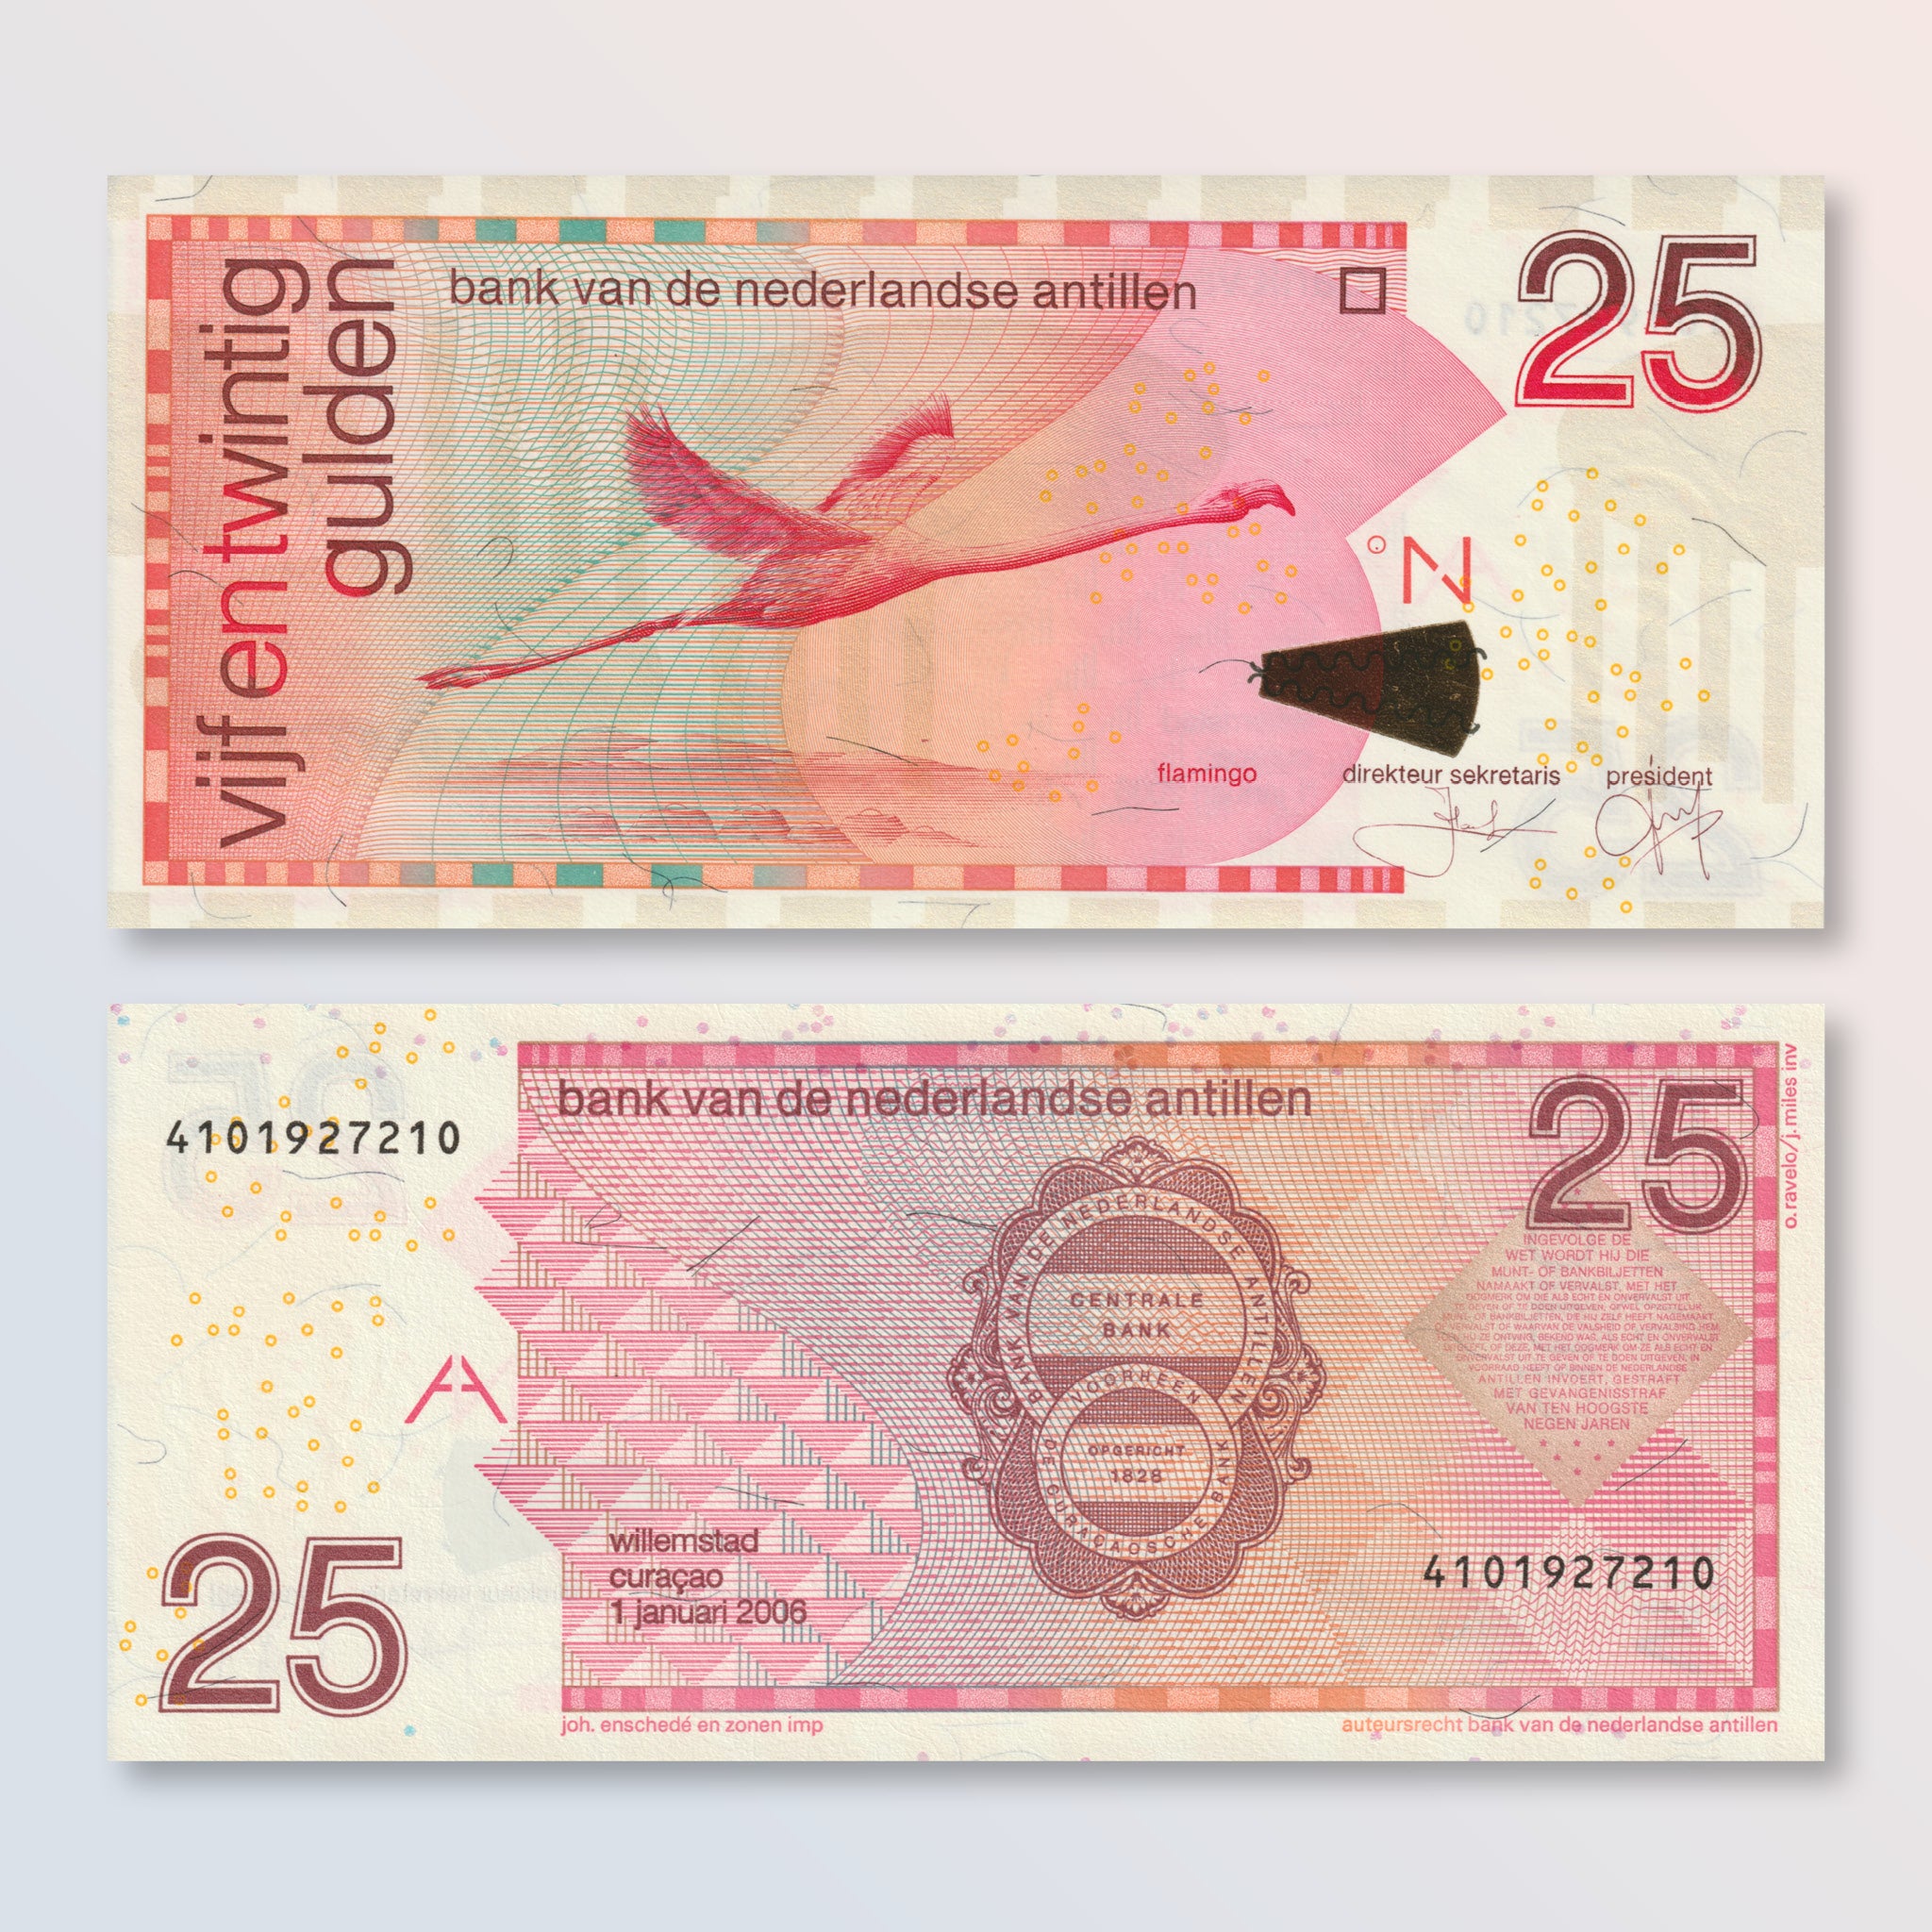 Netherlands Antilles 25 Gulden, 2006, B226d, P29d, UNC - Robert's World Money - World Banknotes